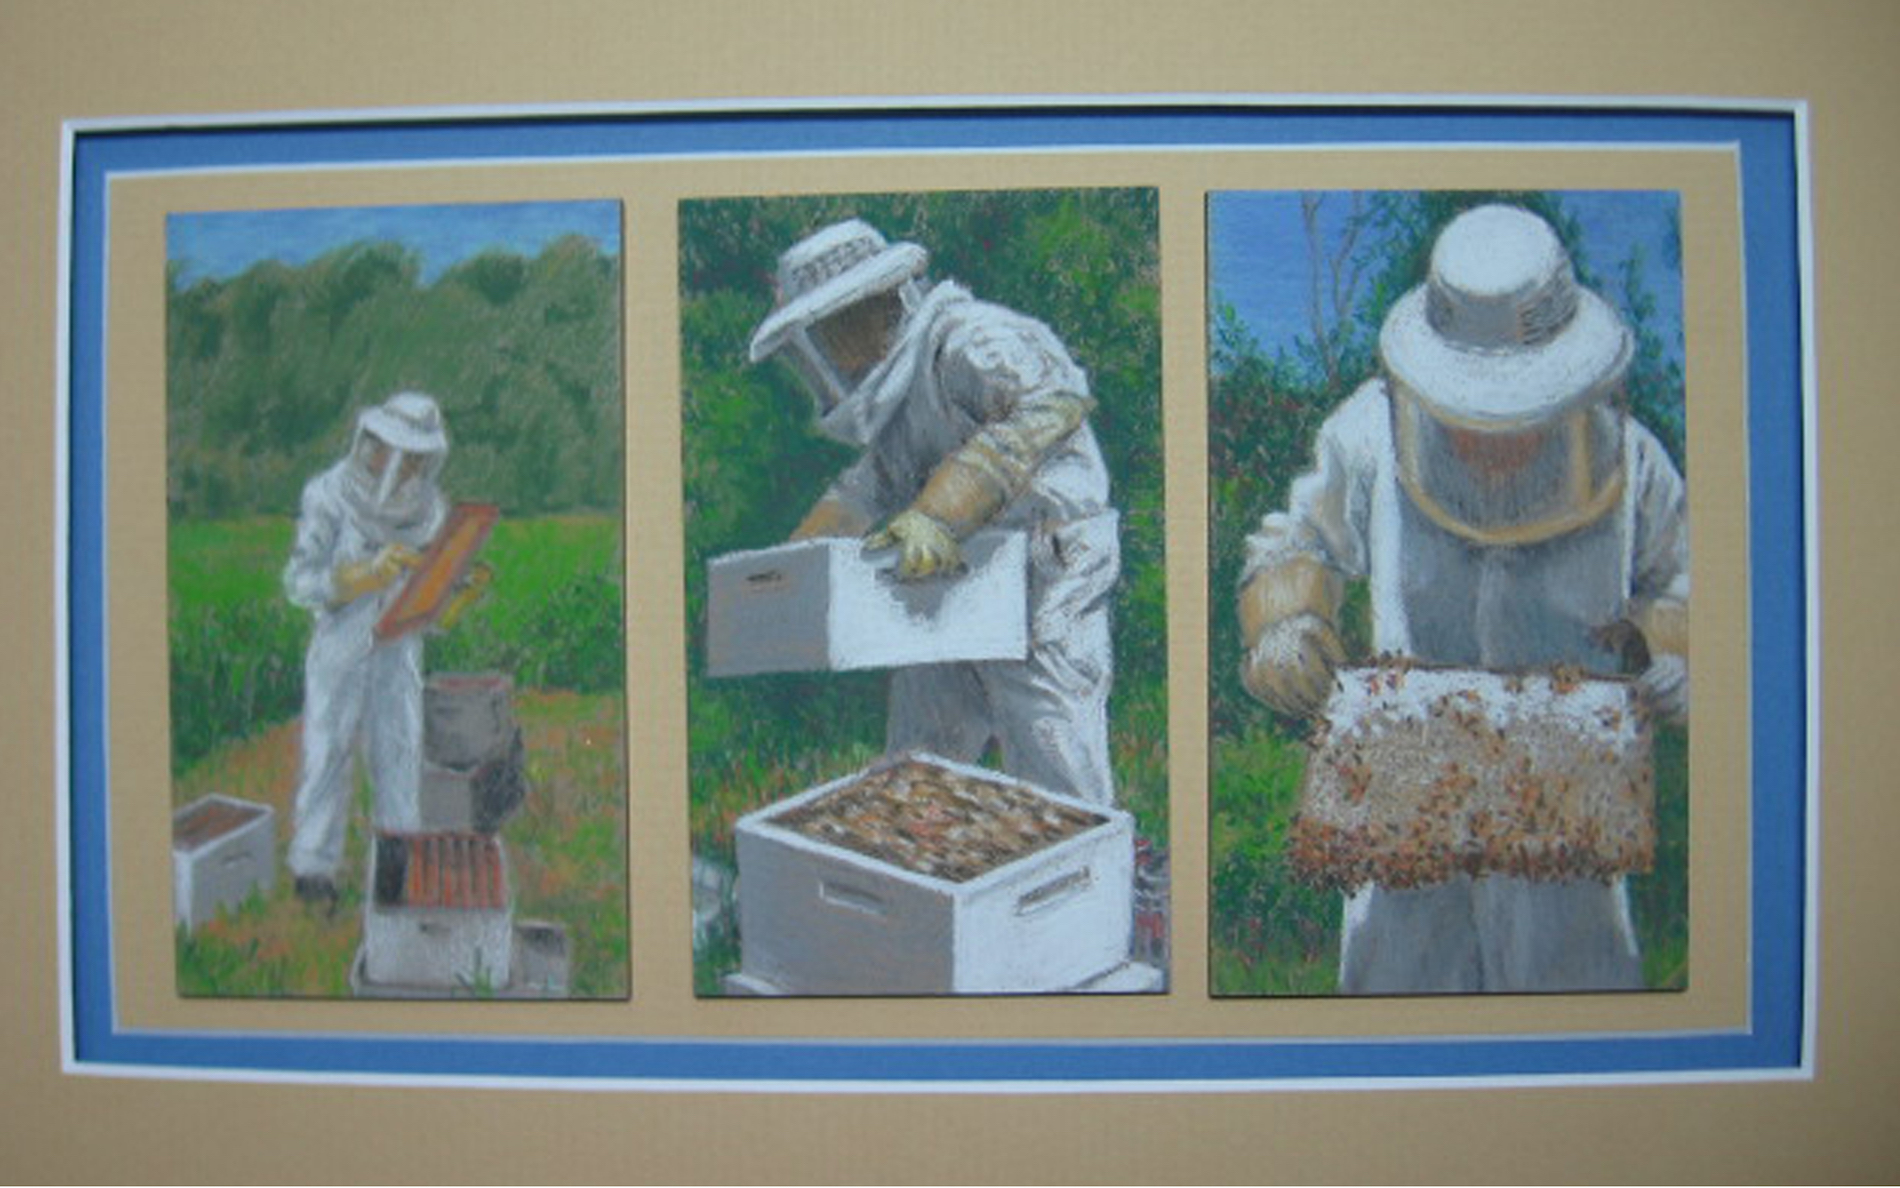 Reid, Joan, David & His Bees